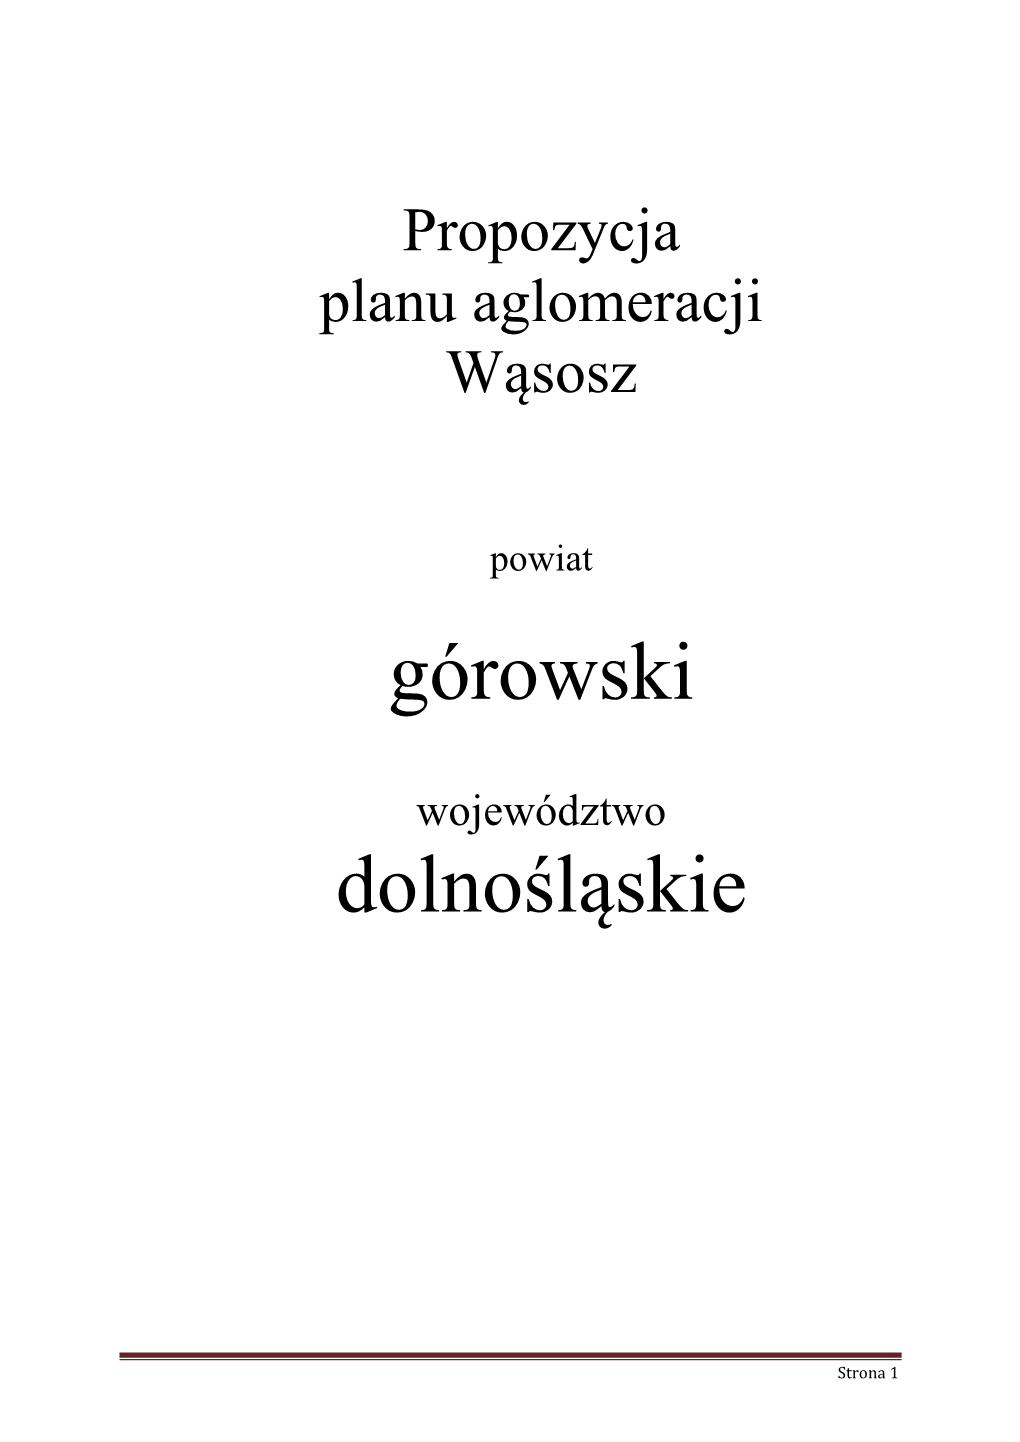 Górowski Dolnośląskie